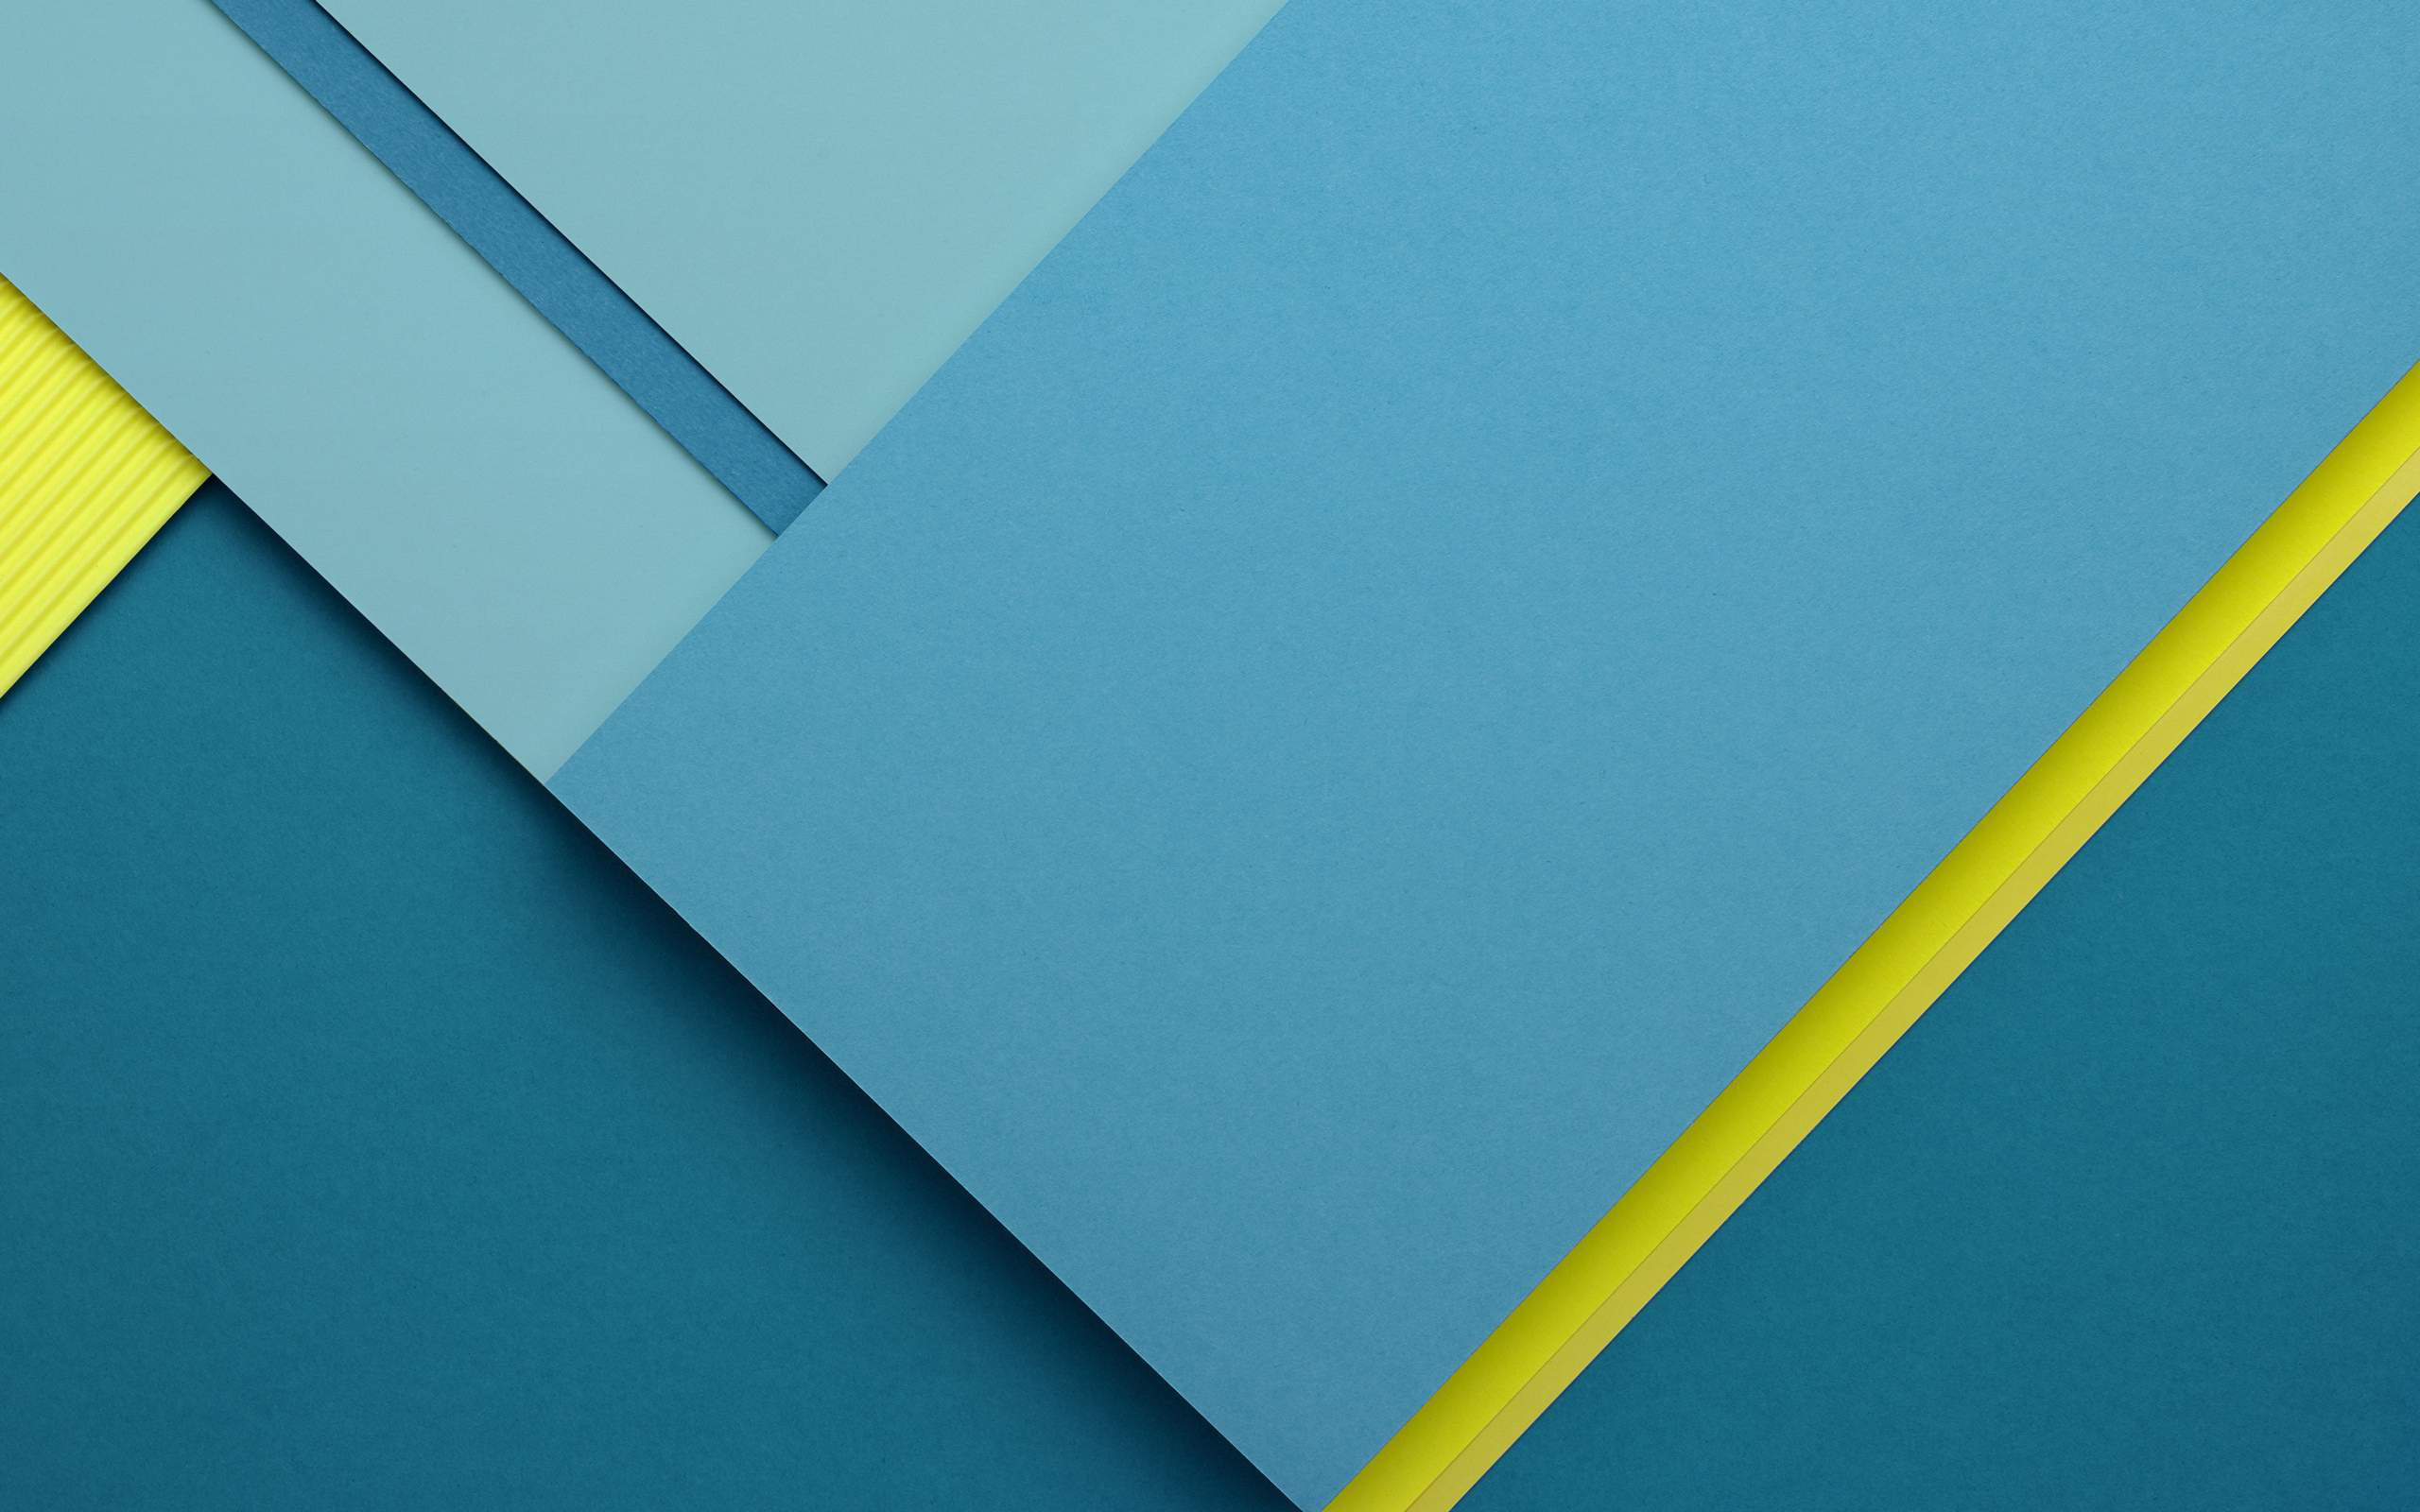 fonds d'écran chrome os,bleu,jaune,turquoise,papier,papier de construction